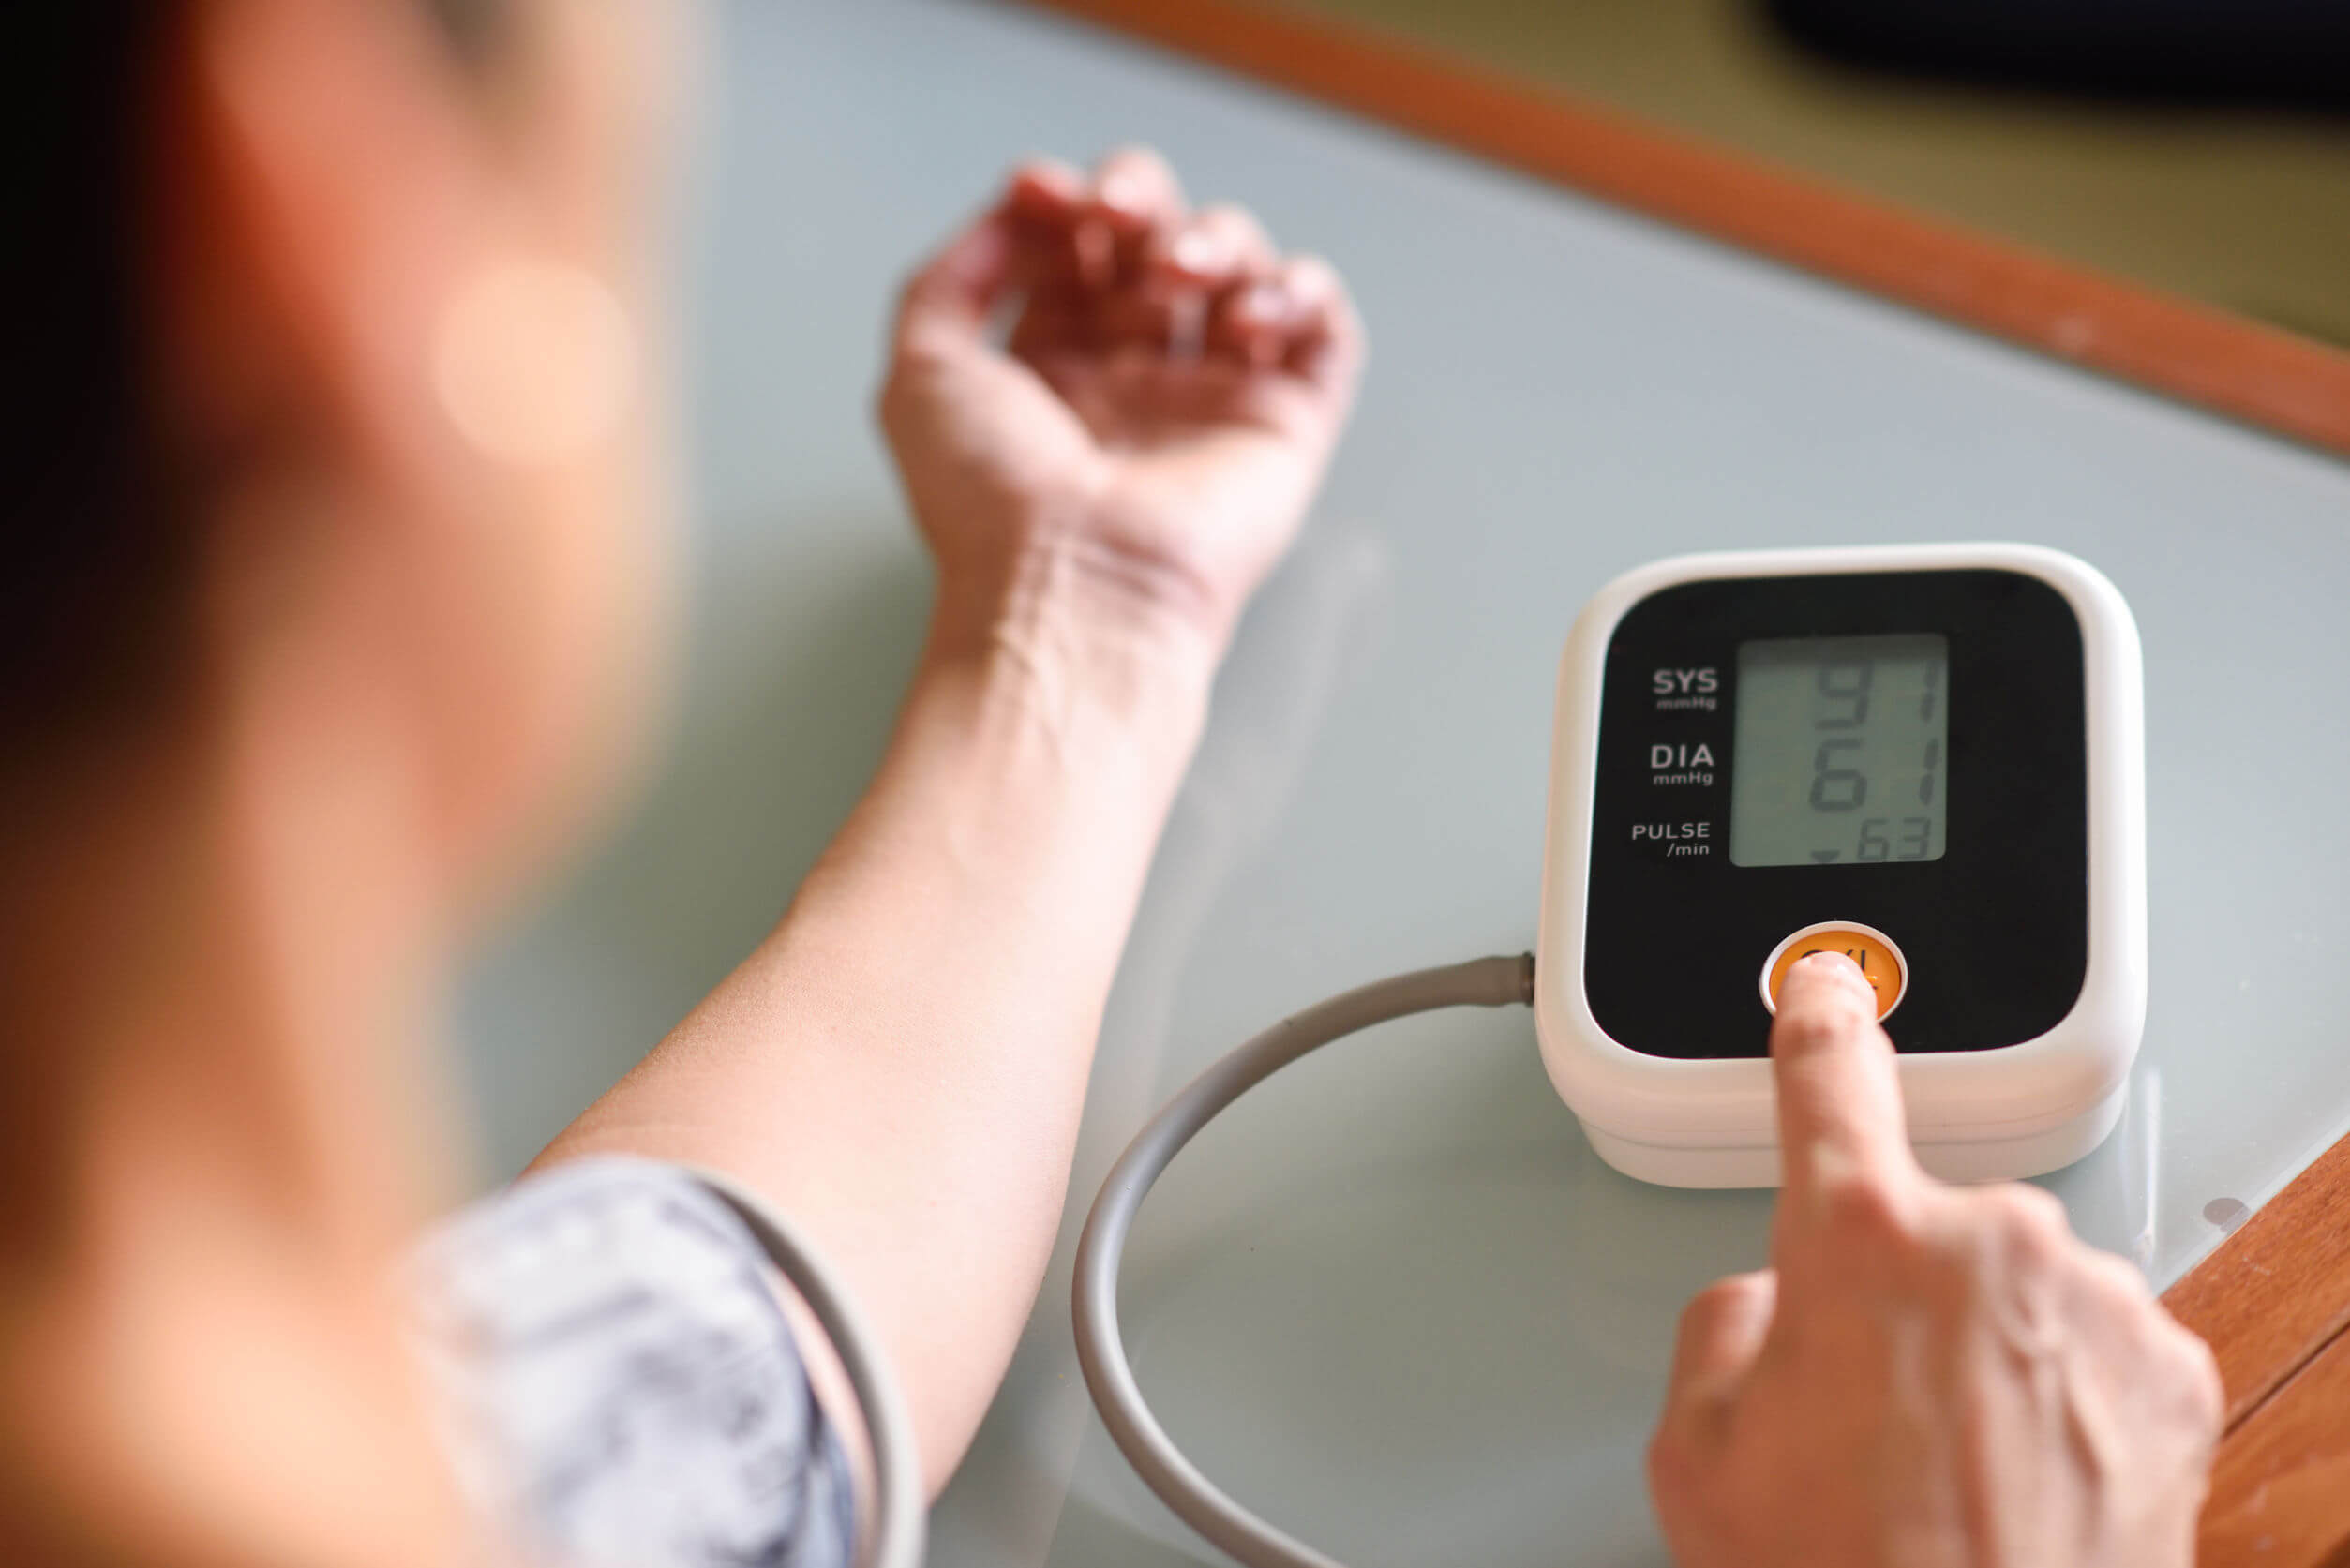 Aferir a pressão arterial em casa pode ser útil no diagnóstico da hipertensão.